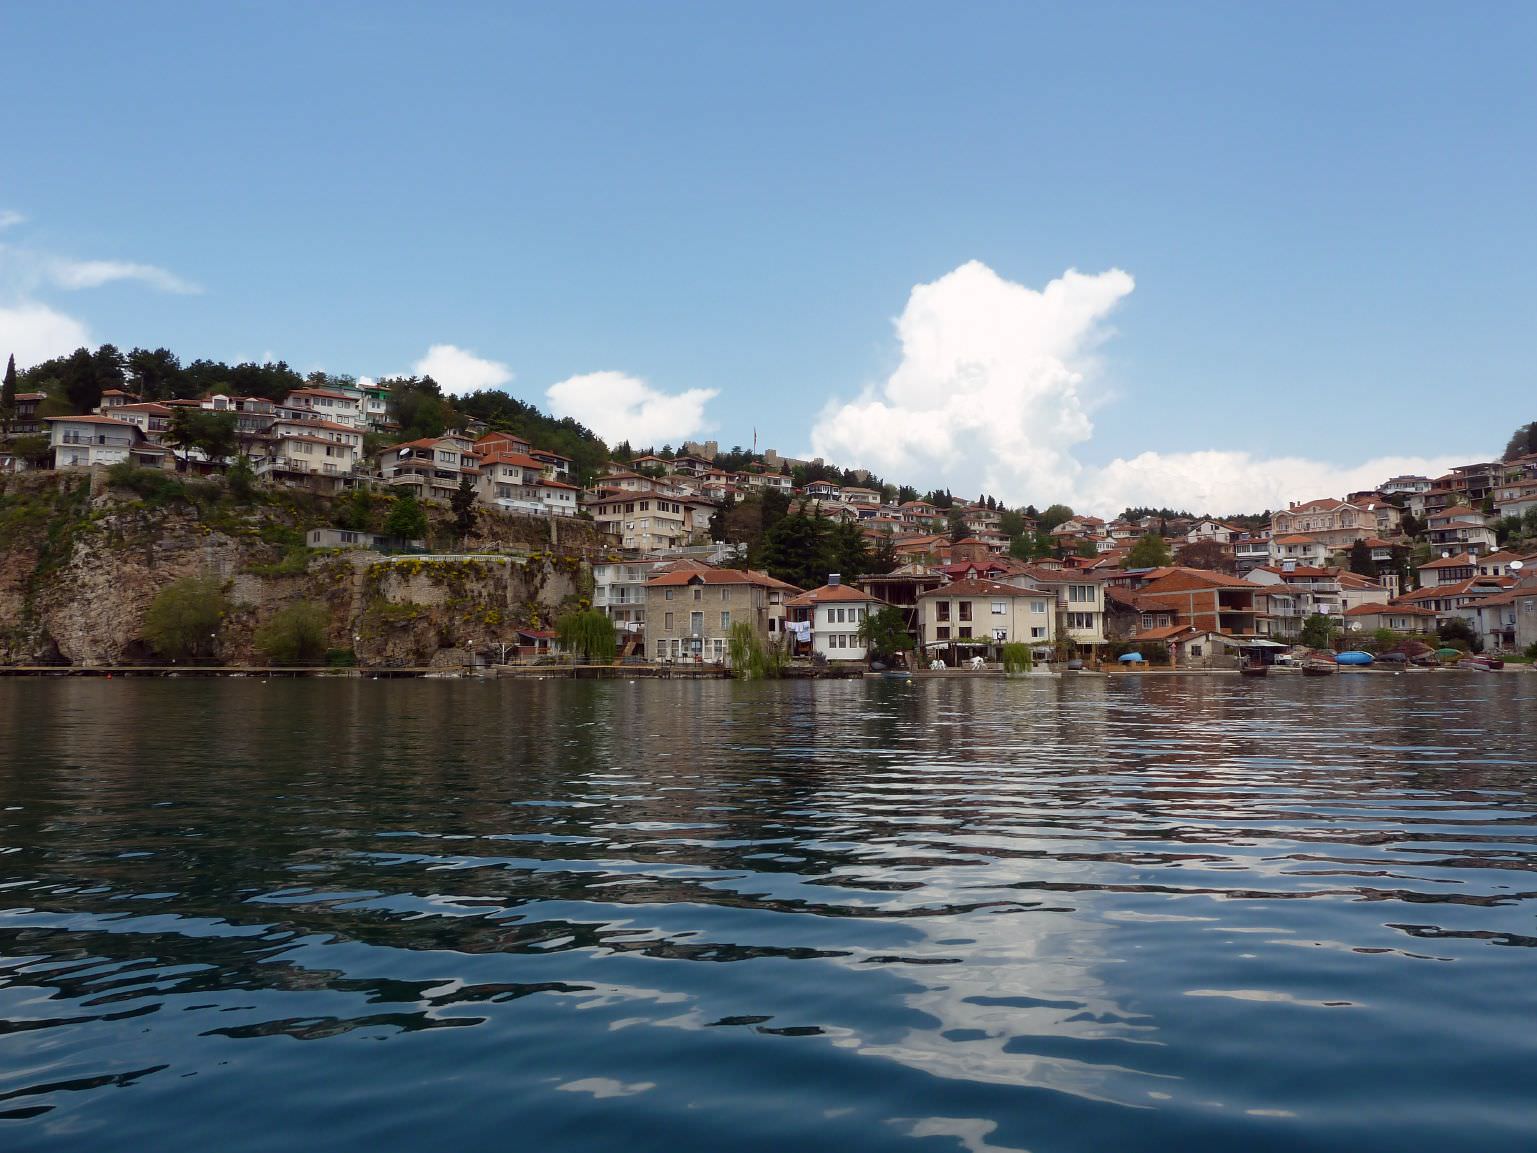 στην λίμνη Οχρίδα..άποψη της παλιάς πόλης